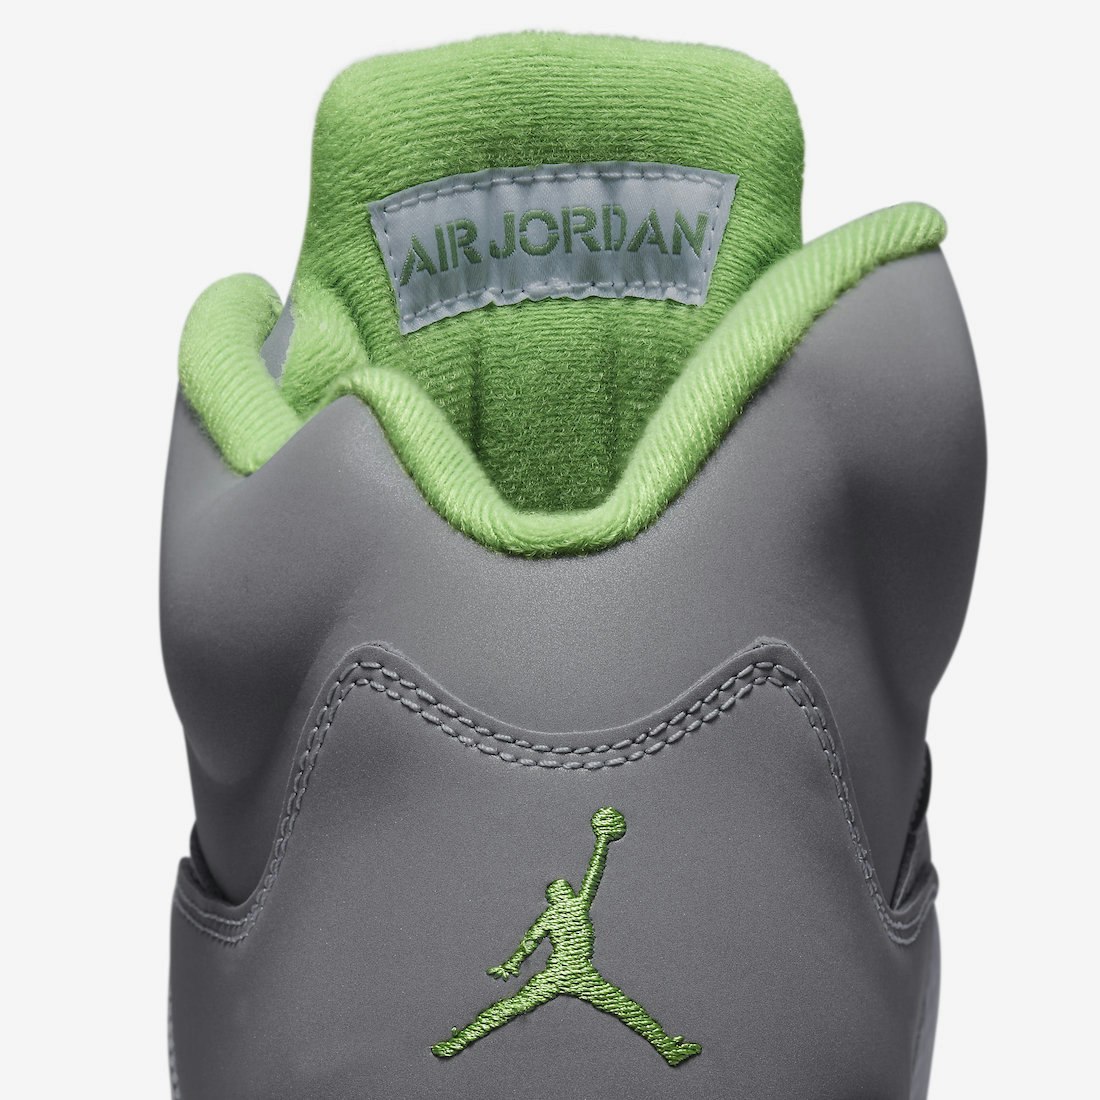 Air Jordan 5 "Green Bean"